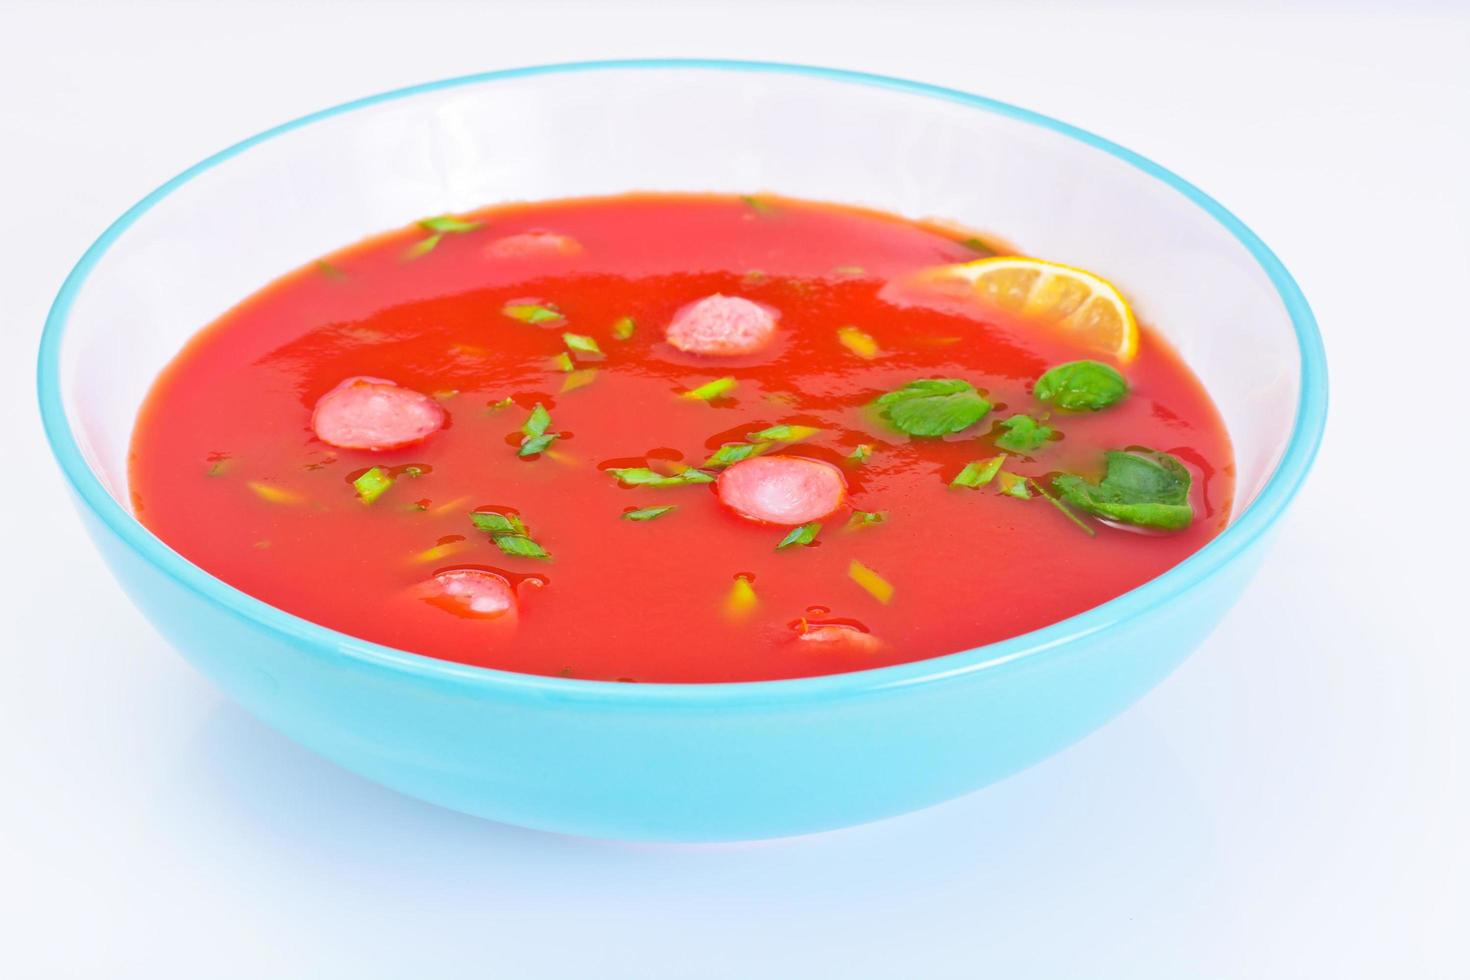 soupe de tomate dans l'assiette. cuisine italienne nationale photo